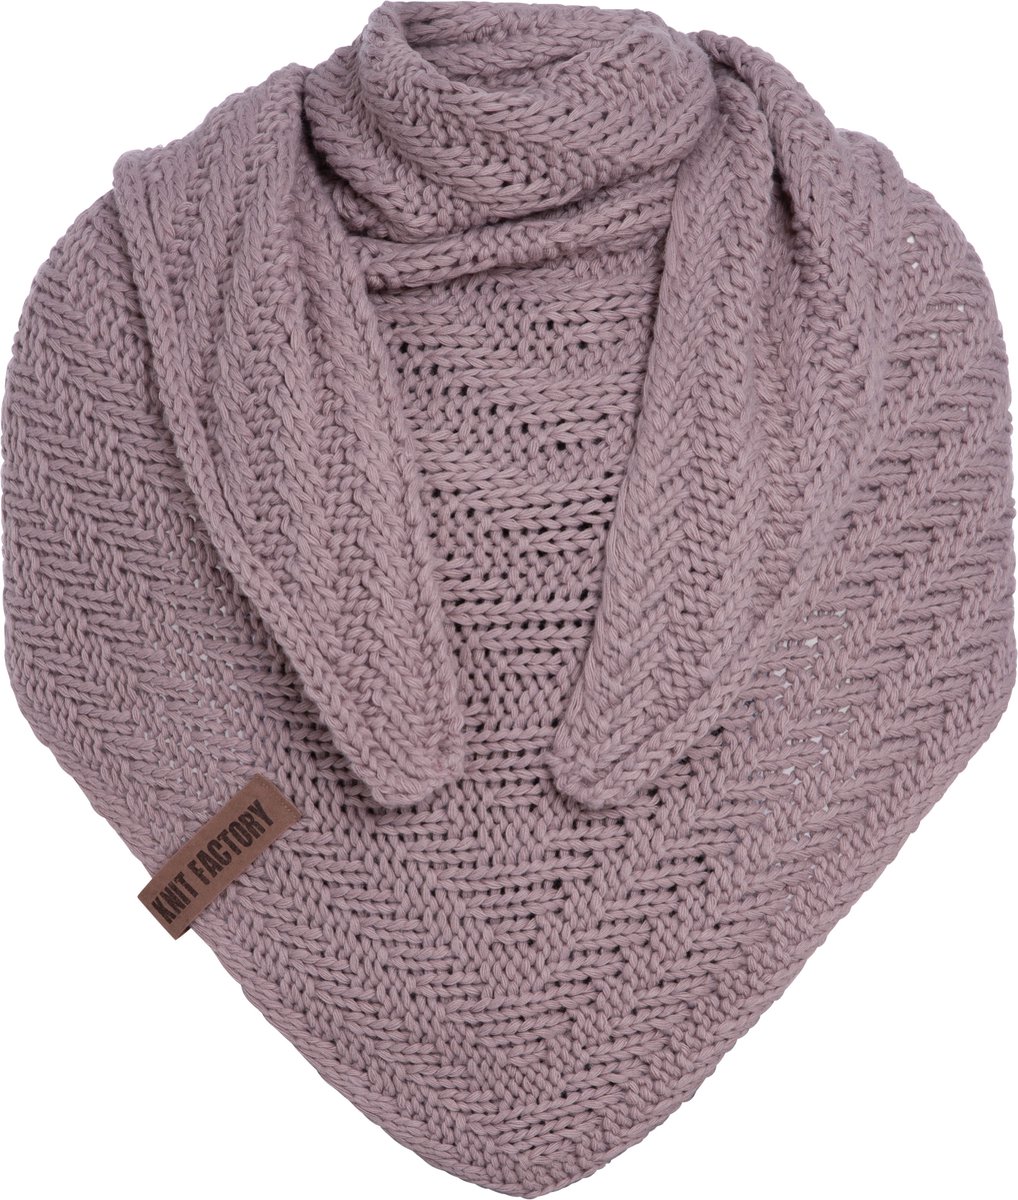 Knit Factory Sally Gebreide Omslagdoek - Driehoek Sjaal Dames - Dames sjaal - Wintersjaal - Stola - Wollen sjaal - Roze sjaal - Mauve - 220x85 cm - Grof gebreid